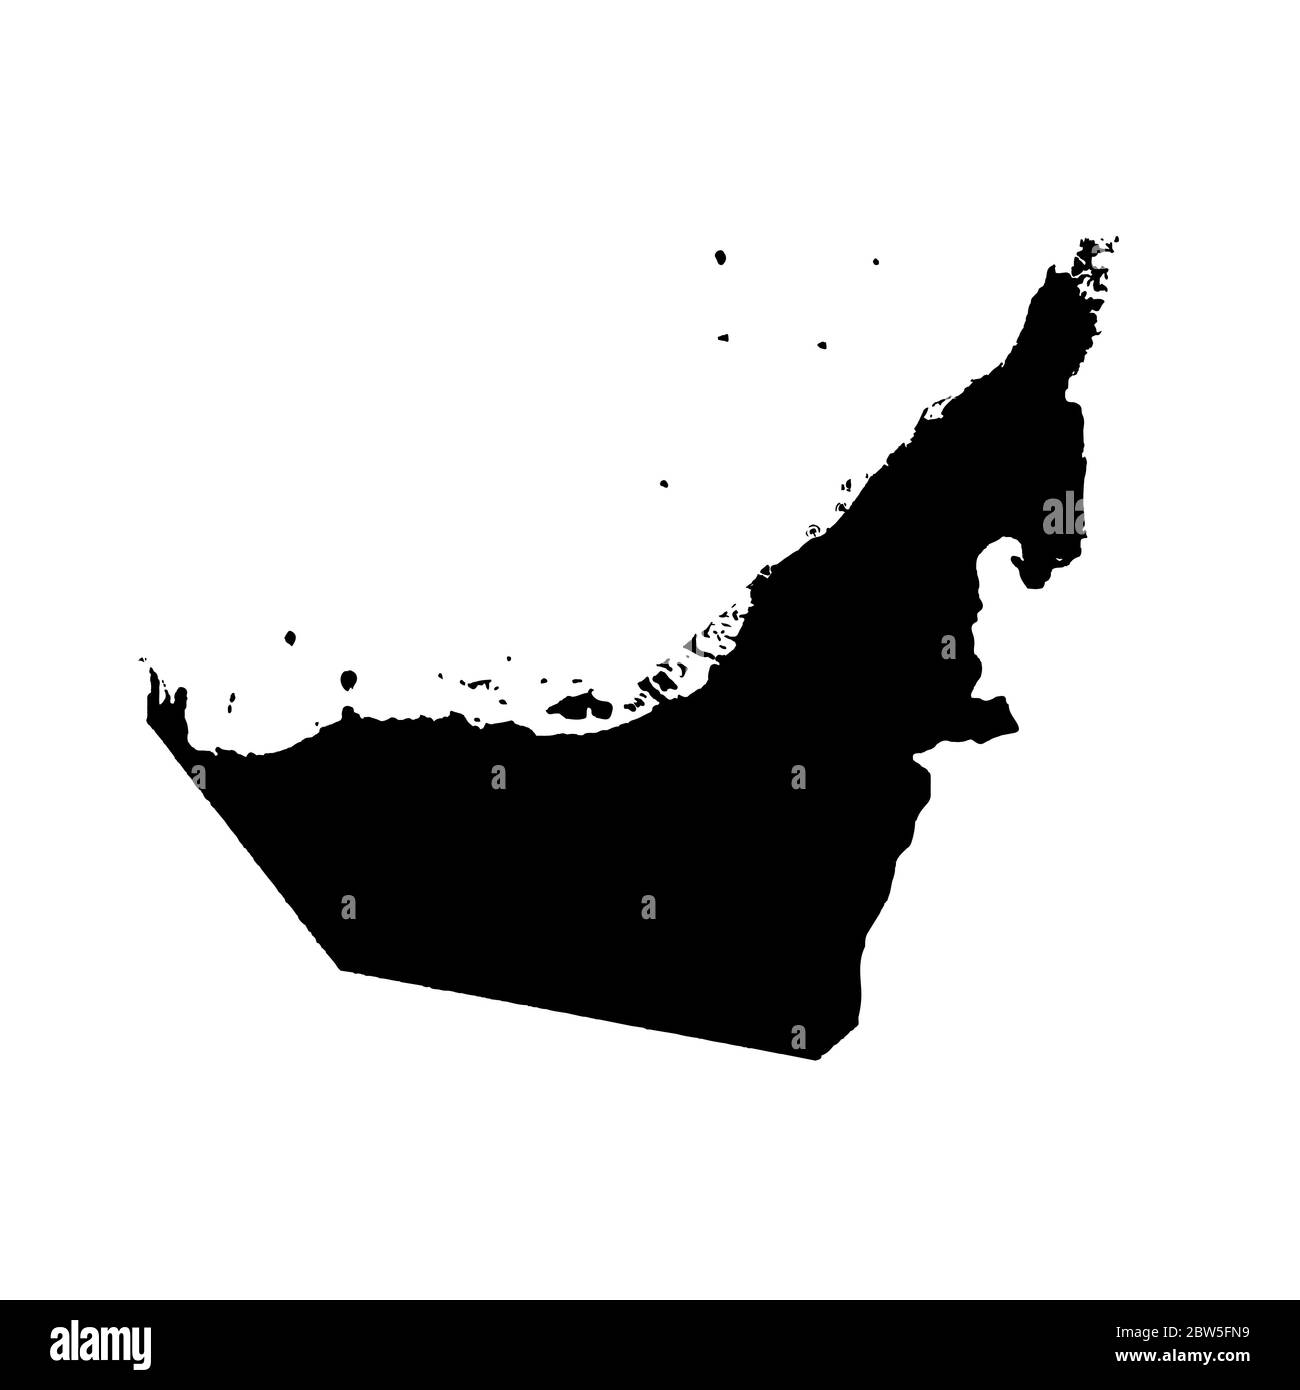 Vektorkarte Vereinigte Arabische Emirate. Isolierte Vektorgrafik. Schwarz auf weißem Hintergrund. EPS 10-Abbildung. Stock Vektor